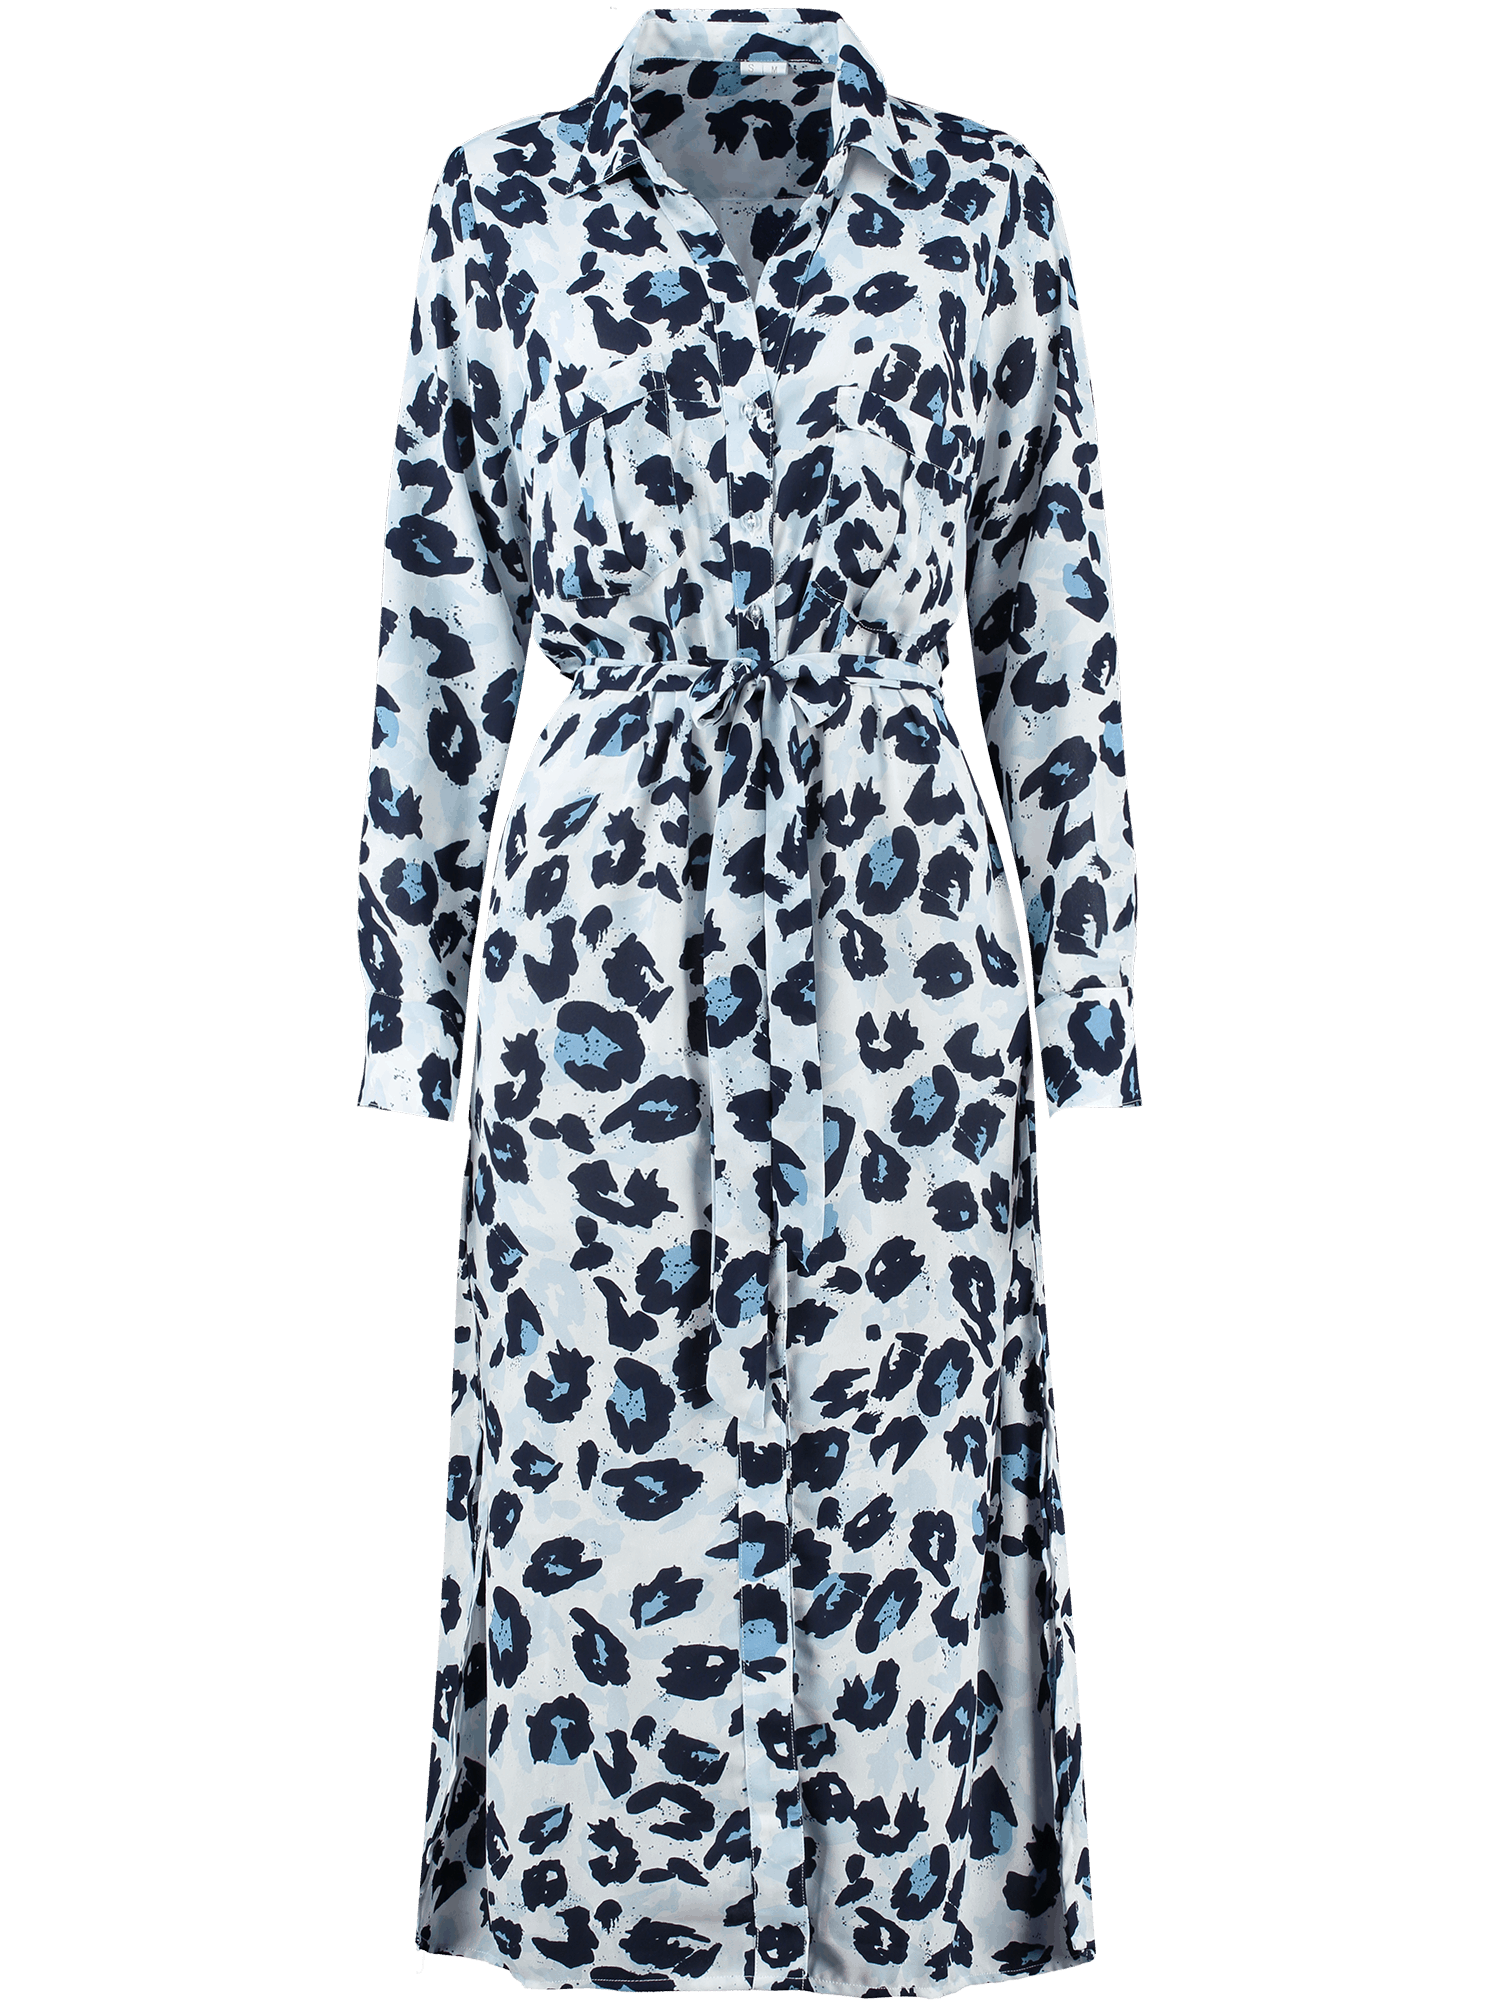 Blue leopard dress front re